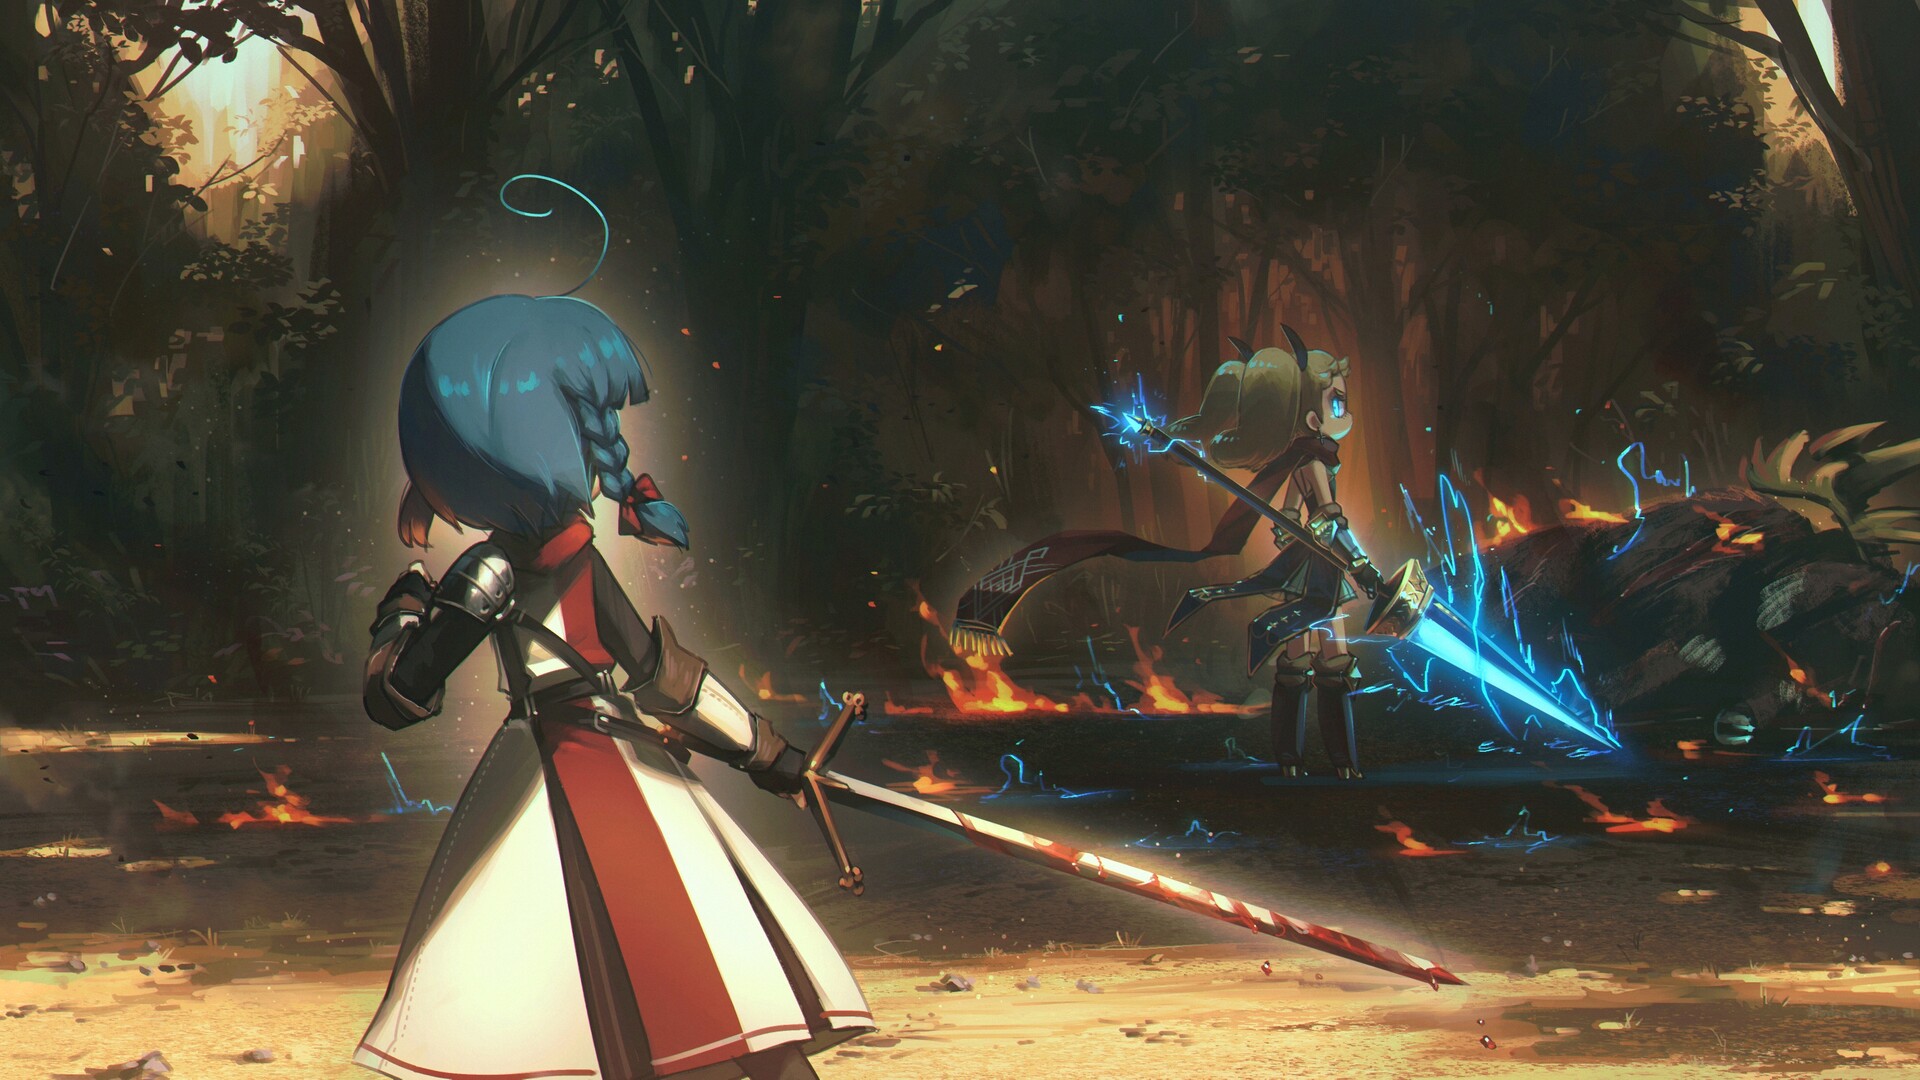 Anime 1920x1080 Porforever digital art fantasy art fantasy armor fantasy weapon sword spear forest